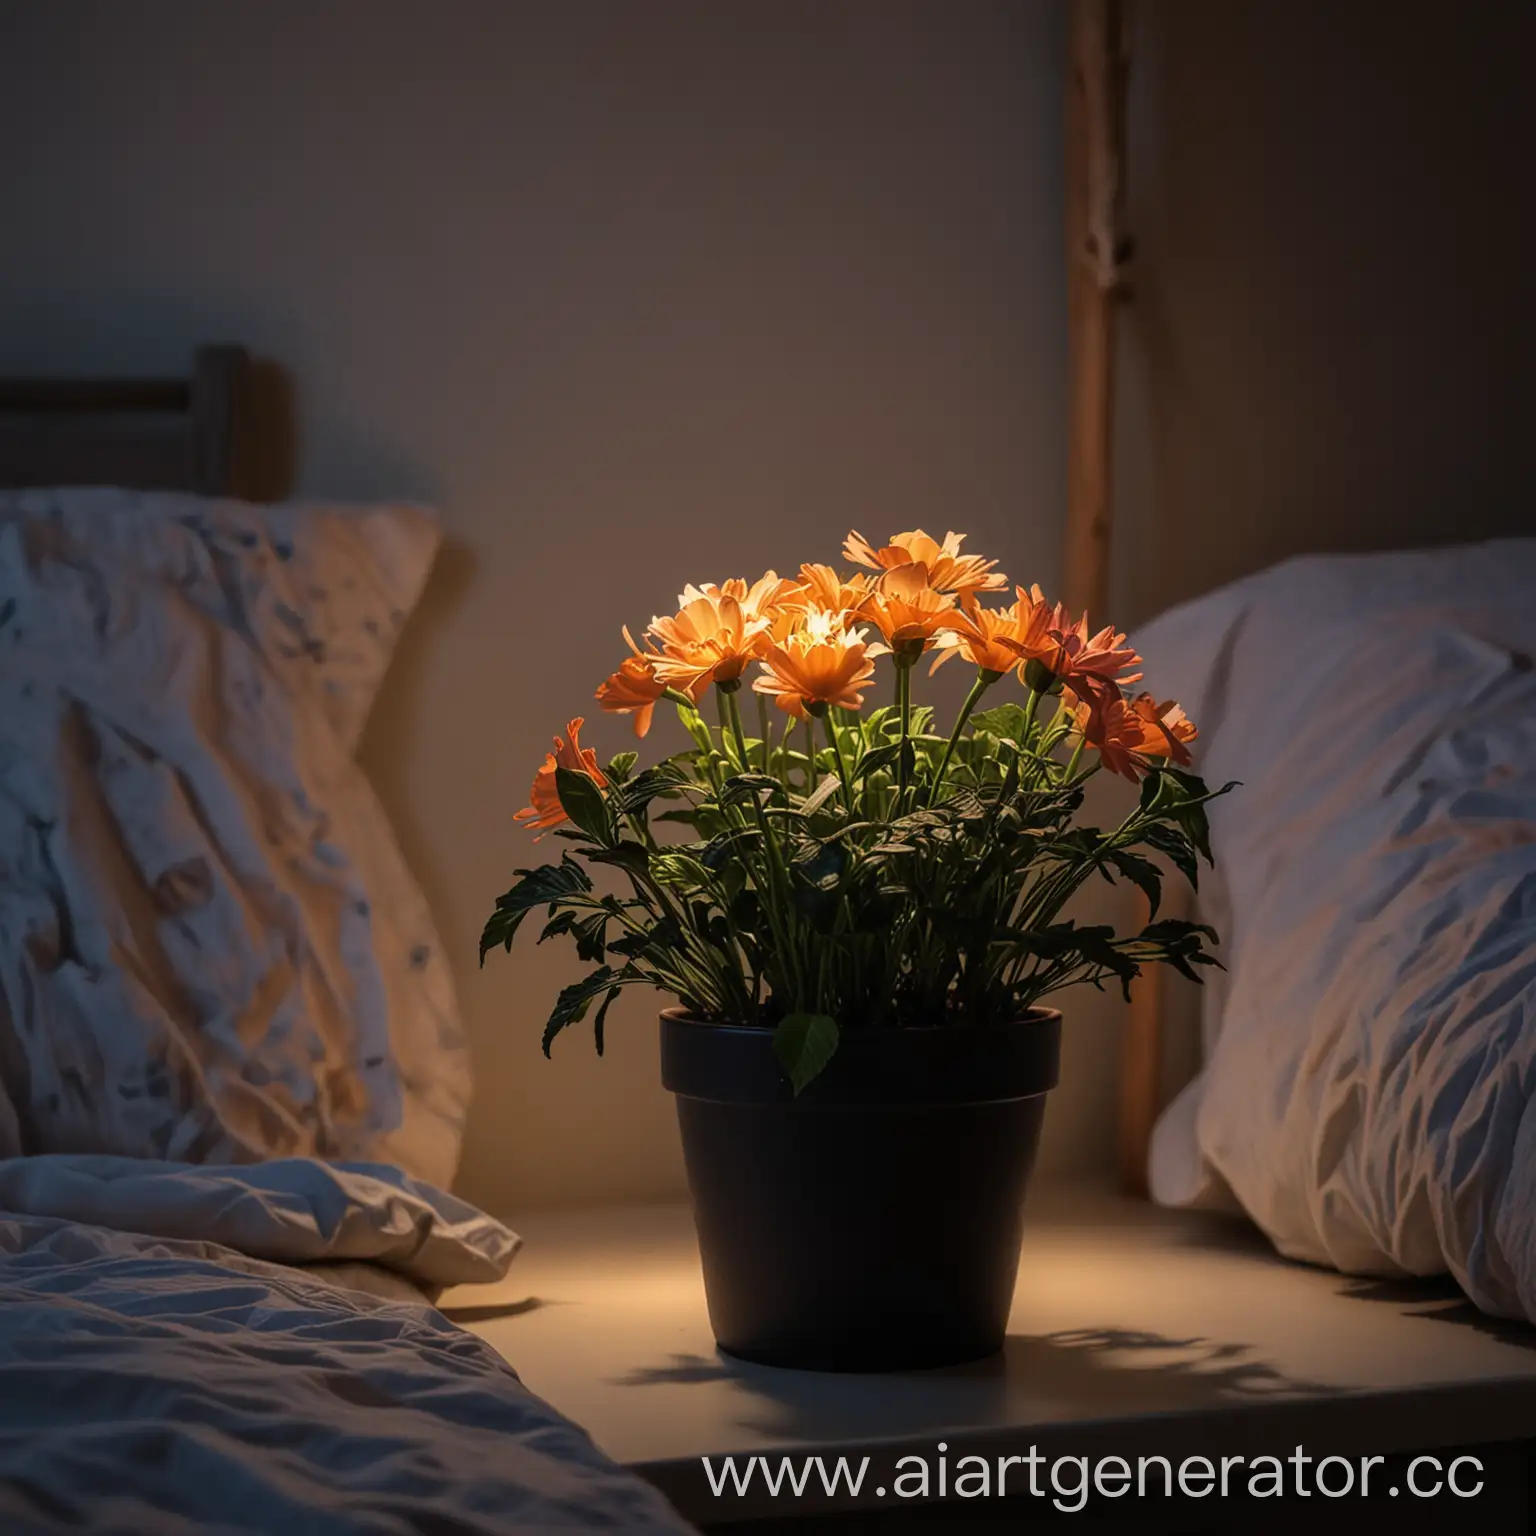 светящийся в темноте цветок в горшке на тумбочке рядом с детской кроватью